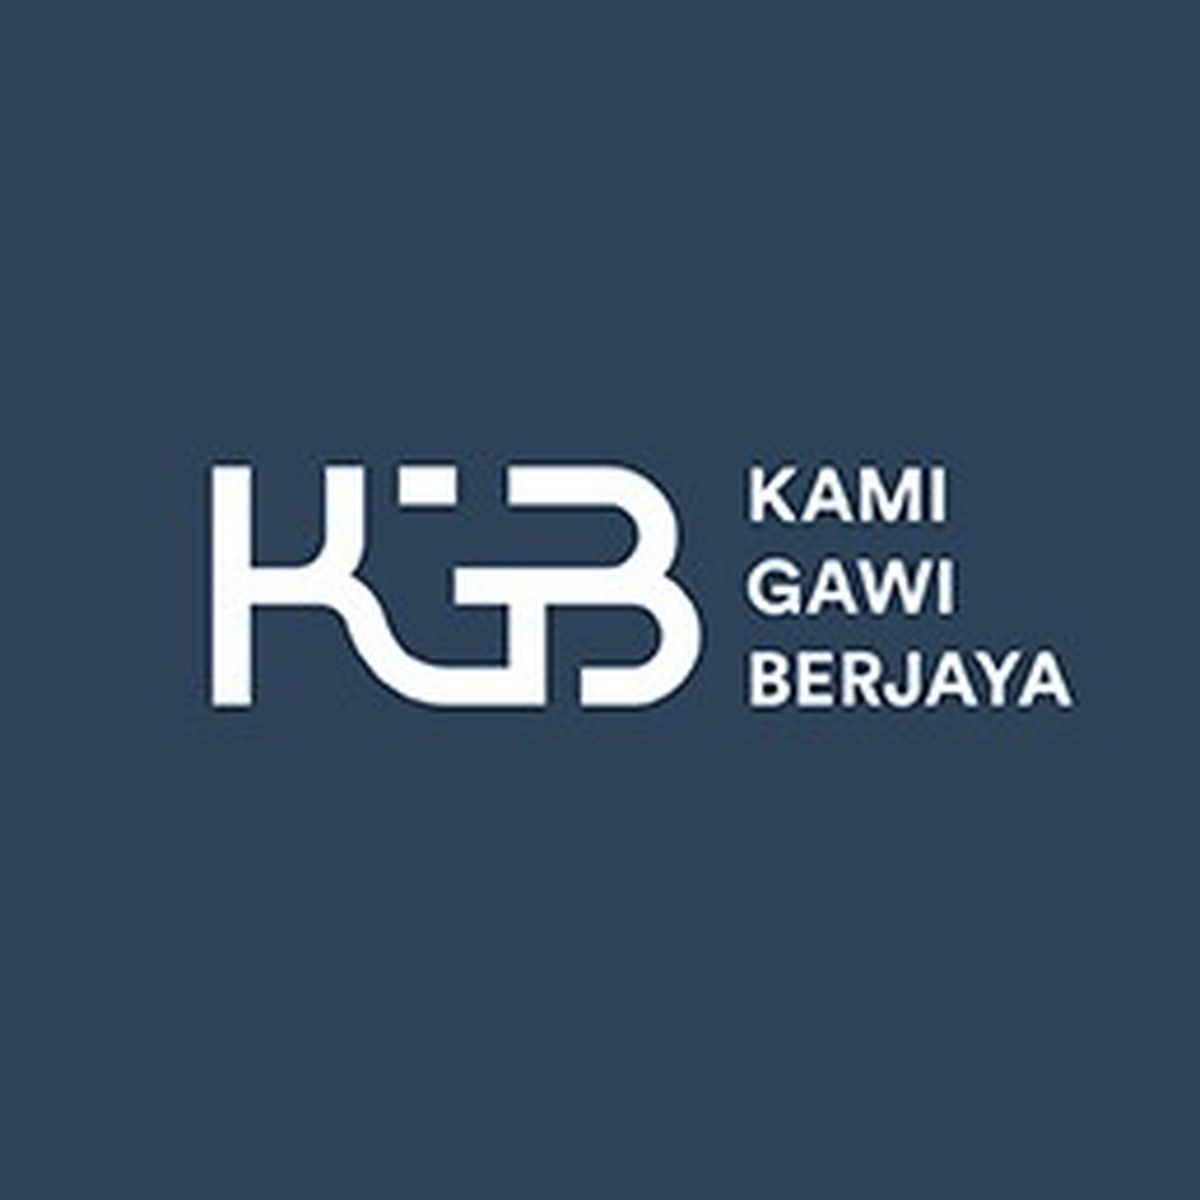 Programmer Jobs at PT  Kami Gawi Berjaya  Closed Glints